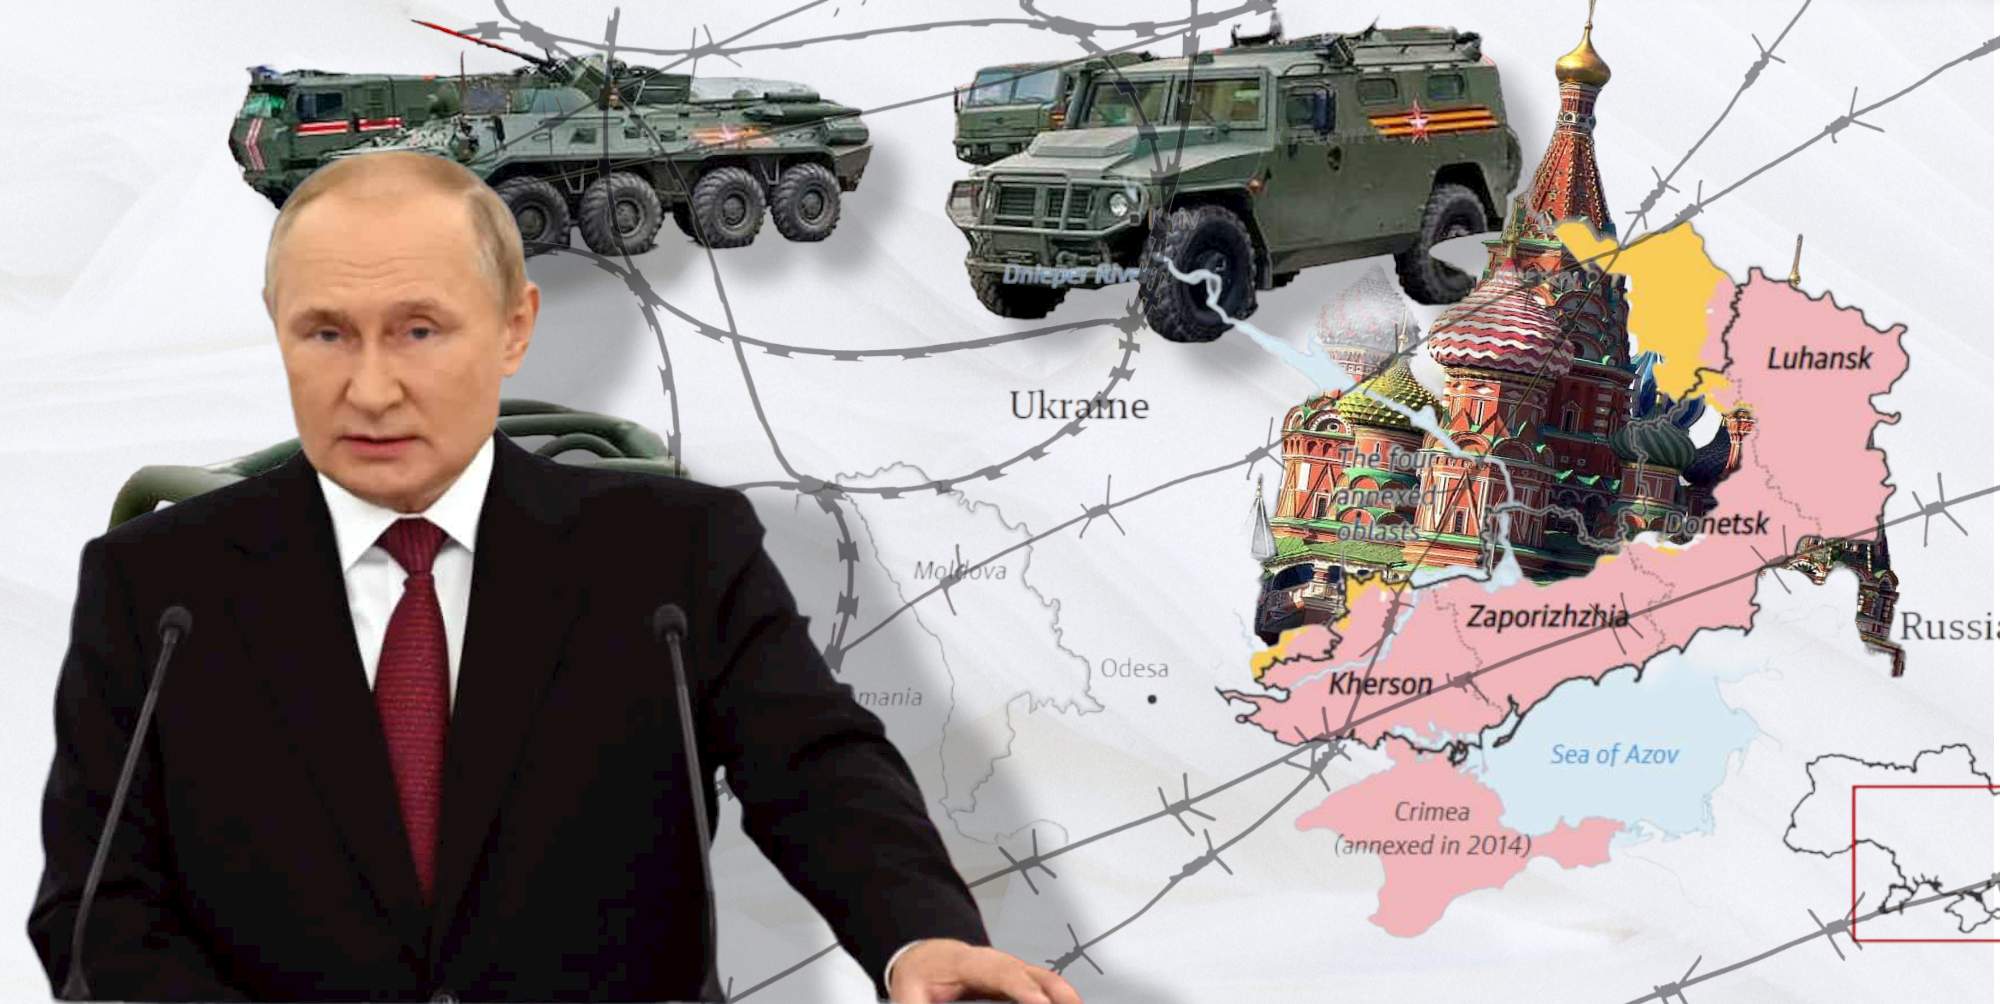 Ο Βλαντιμίρ Πούτιν και ο χάρτης με τις προσαρτήσεις της Ρωσίας επί ουκρανικού εδάφους